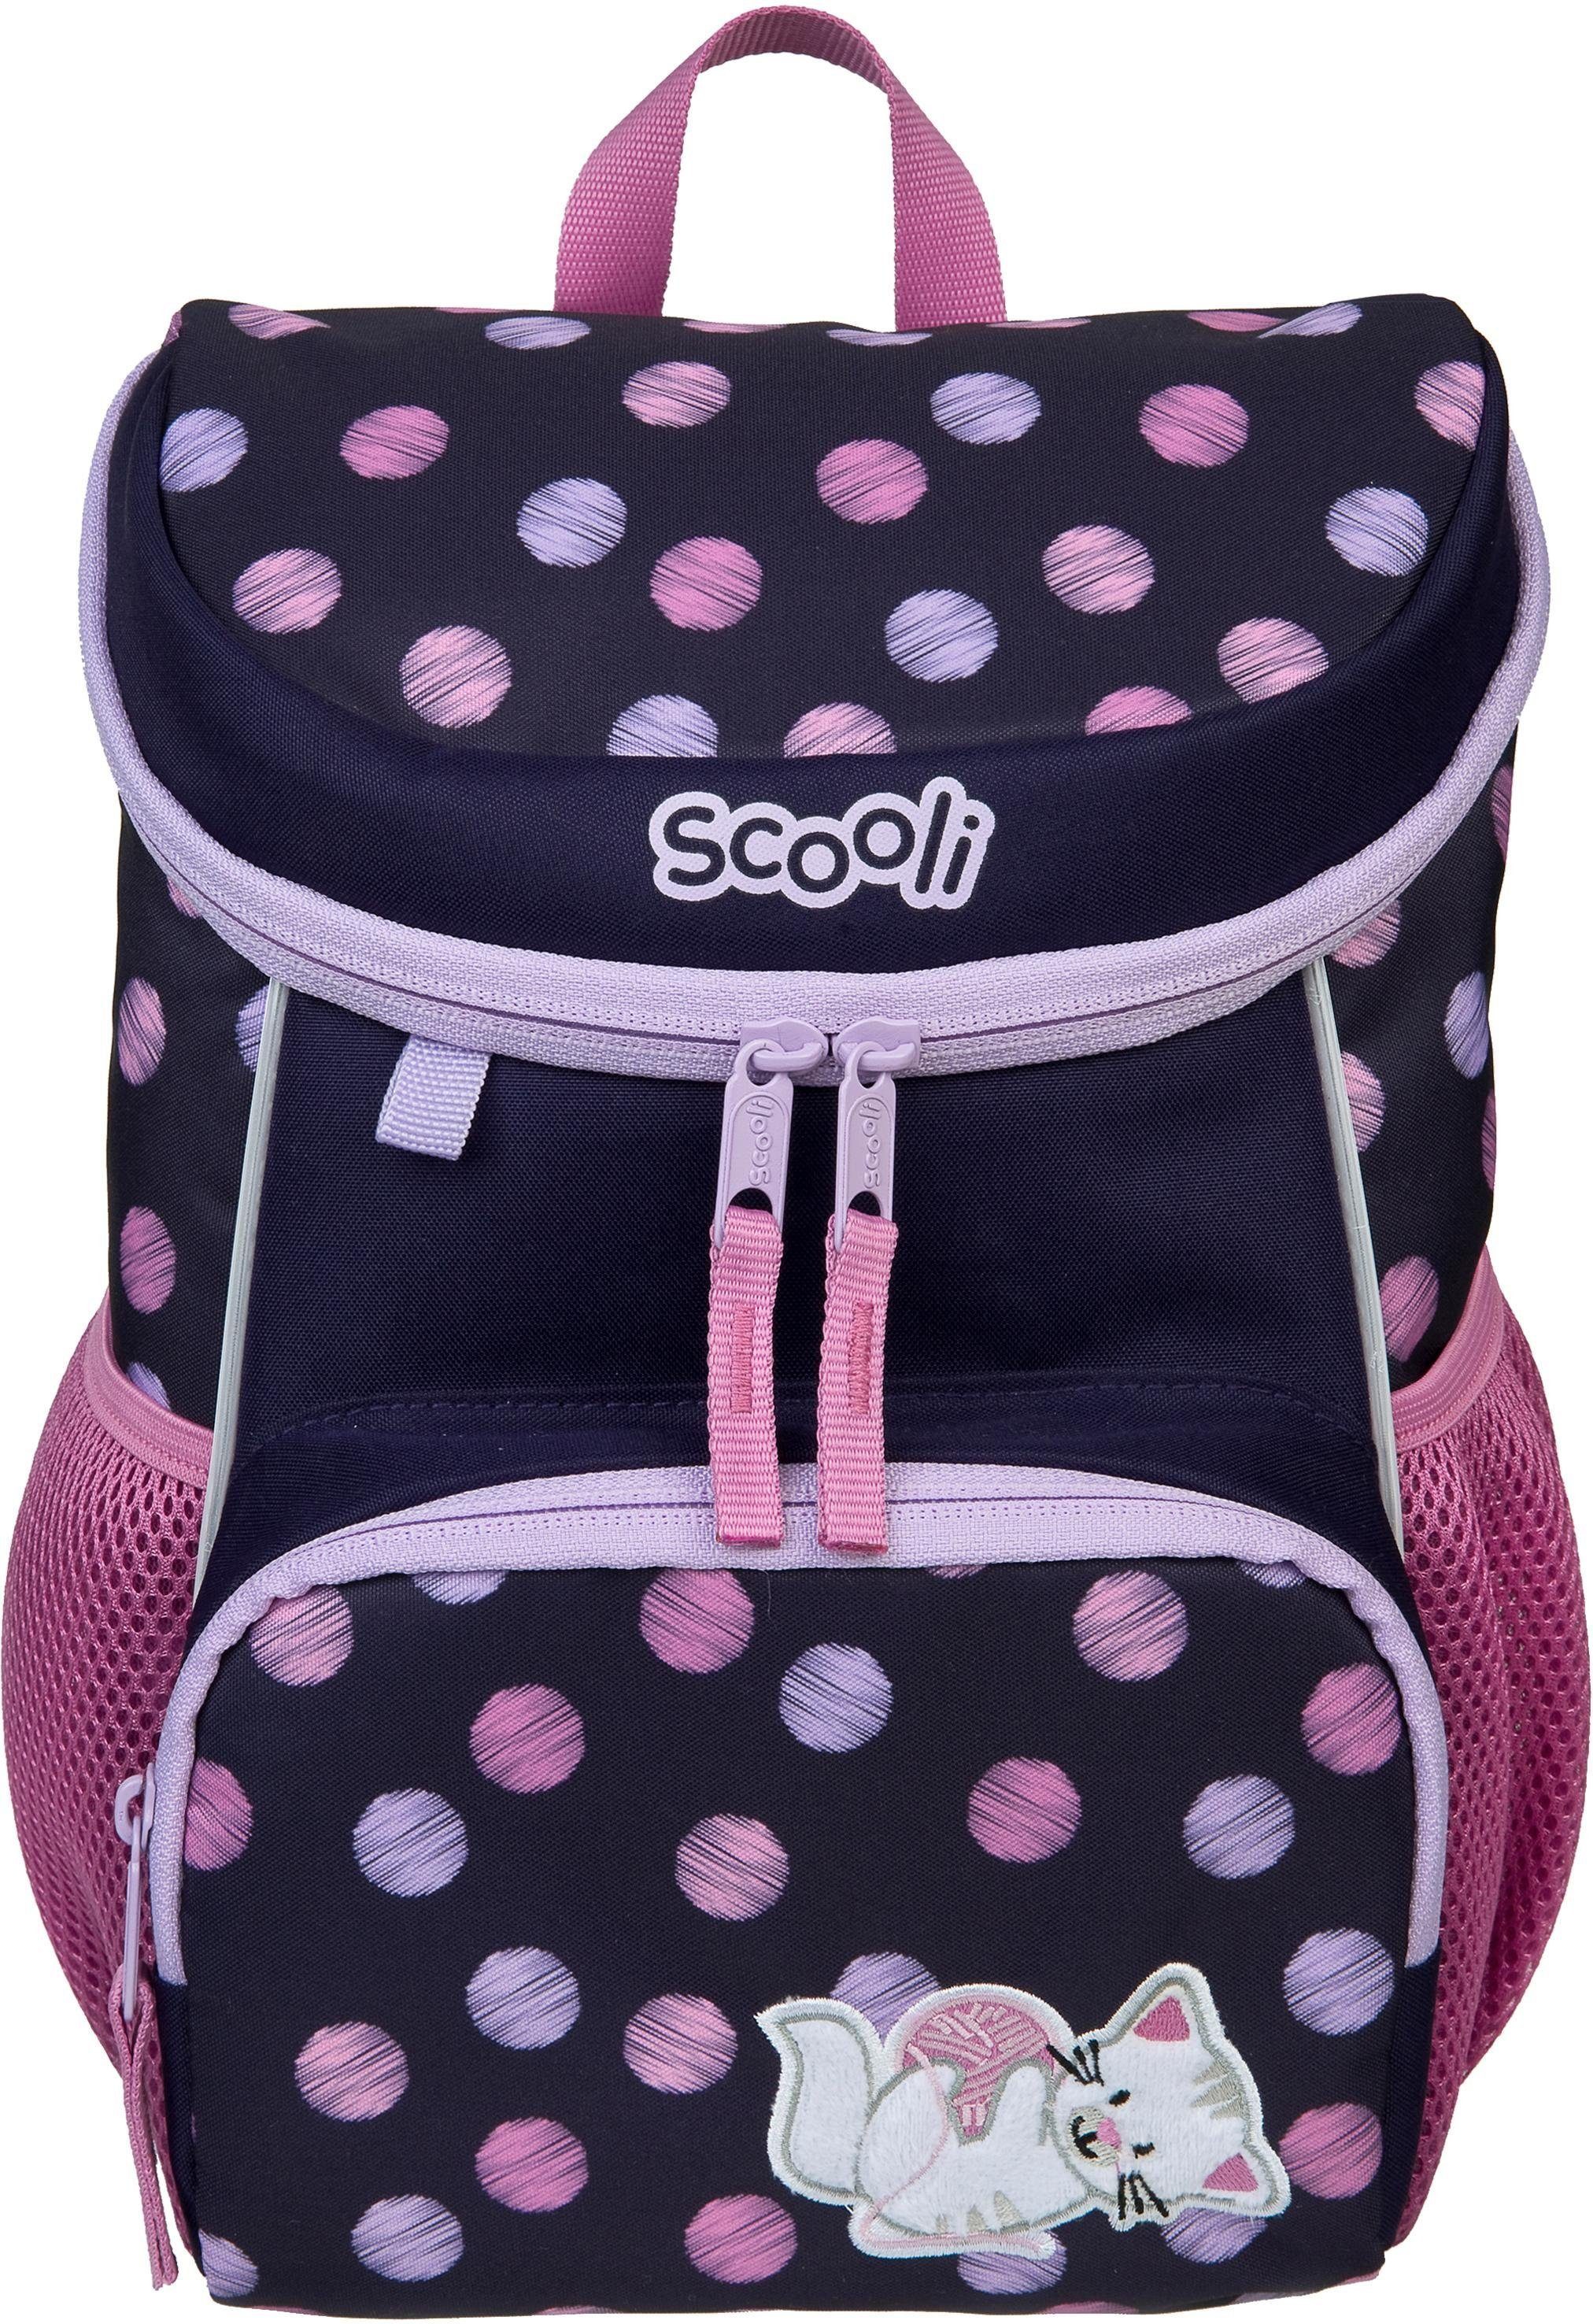 Scooli Kinderrucksack Mini-Me, Caty höhenverstellbaren gepolsterten, mit Mesh-Einsatz mit Tragegurten Cat, Rucksack